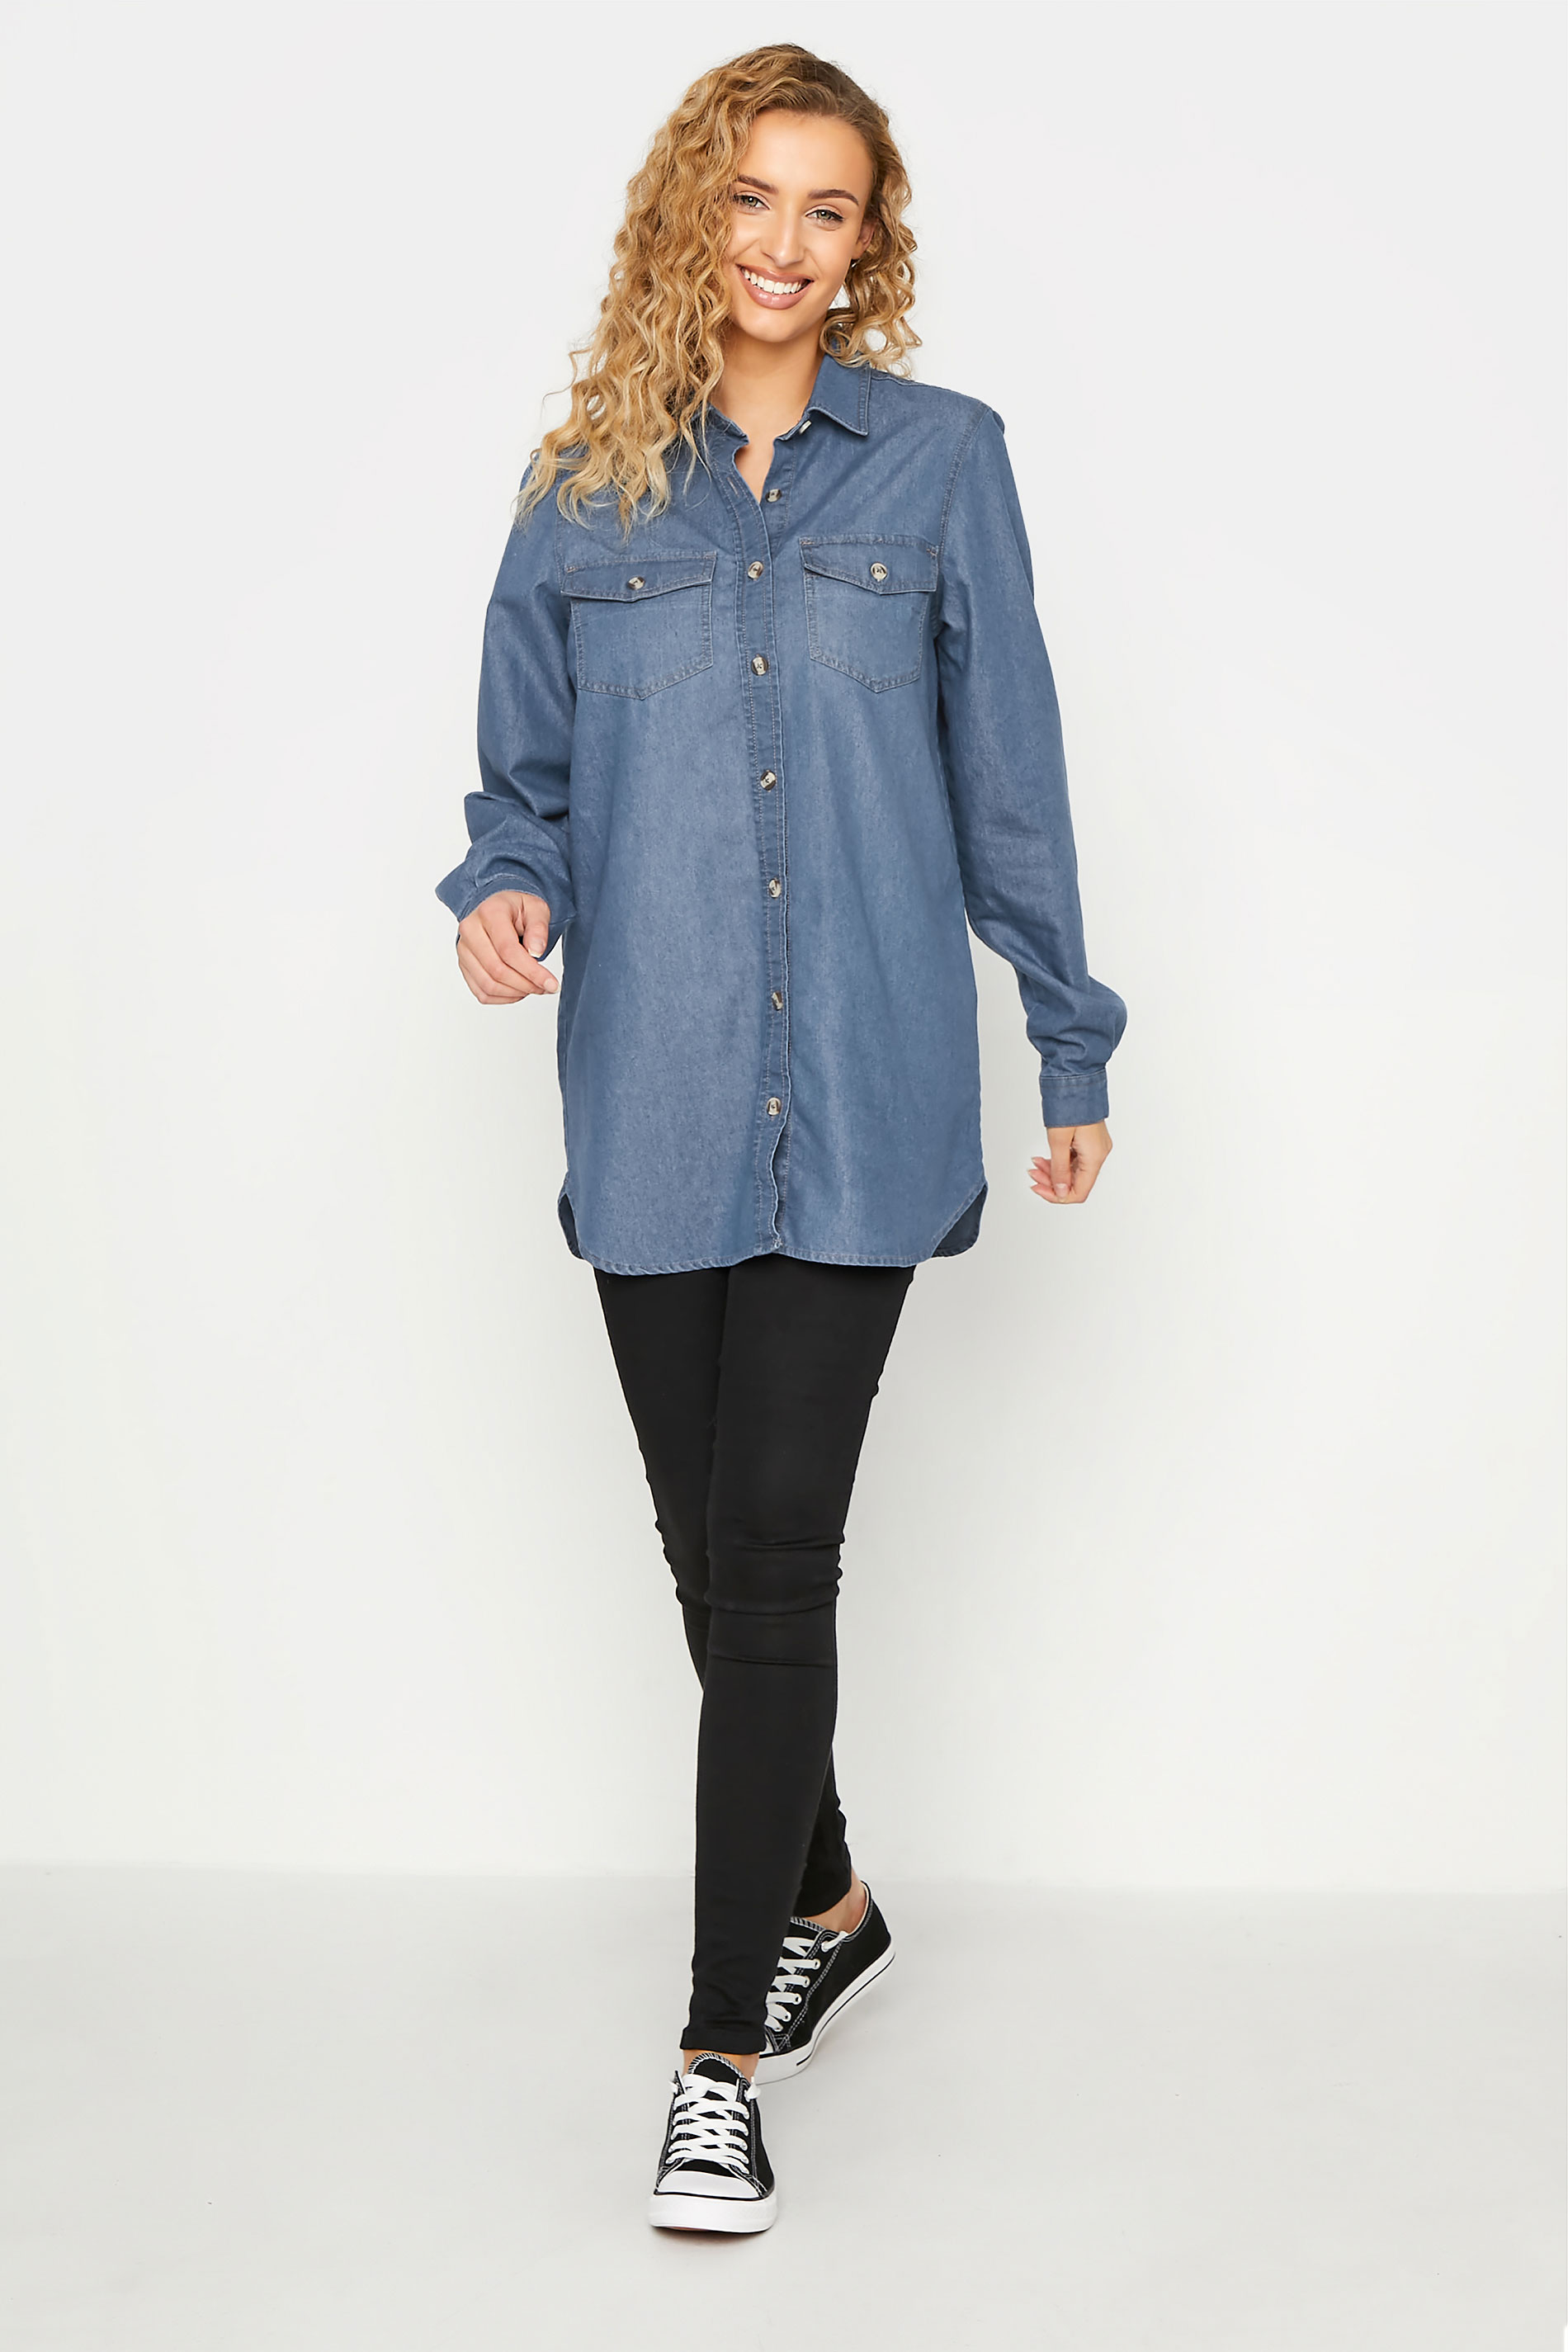 LTS Tall Women's Blue Western Denim Shirt | Long Tall Sally 2